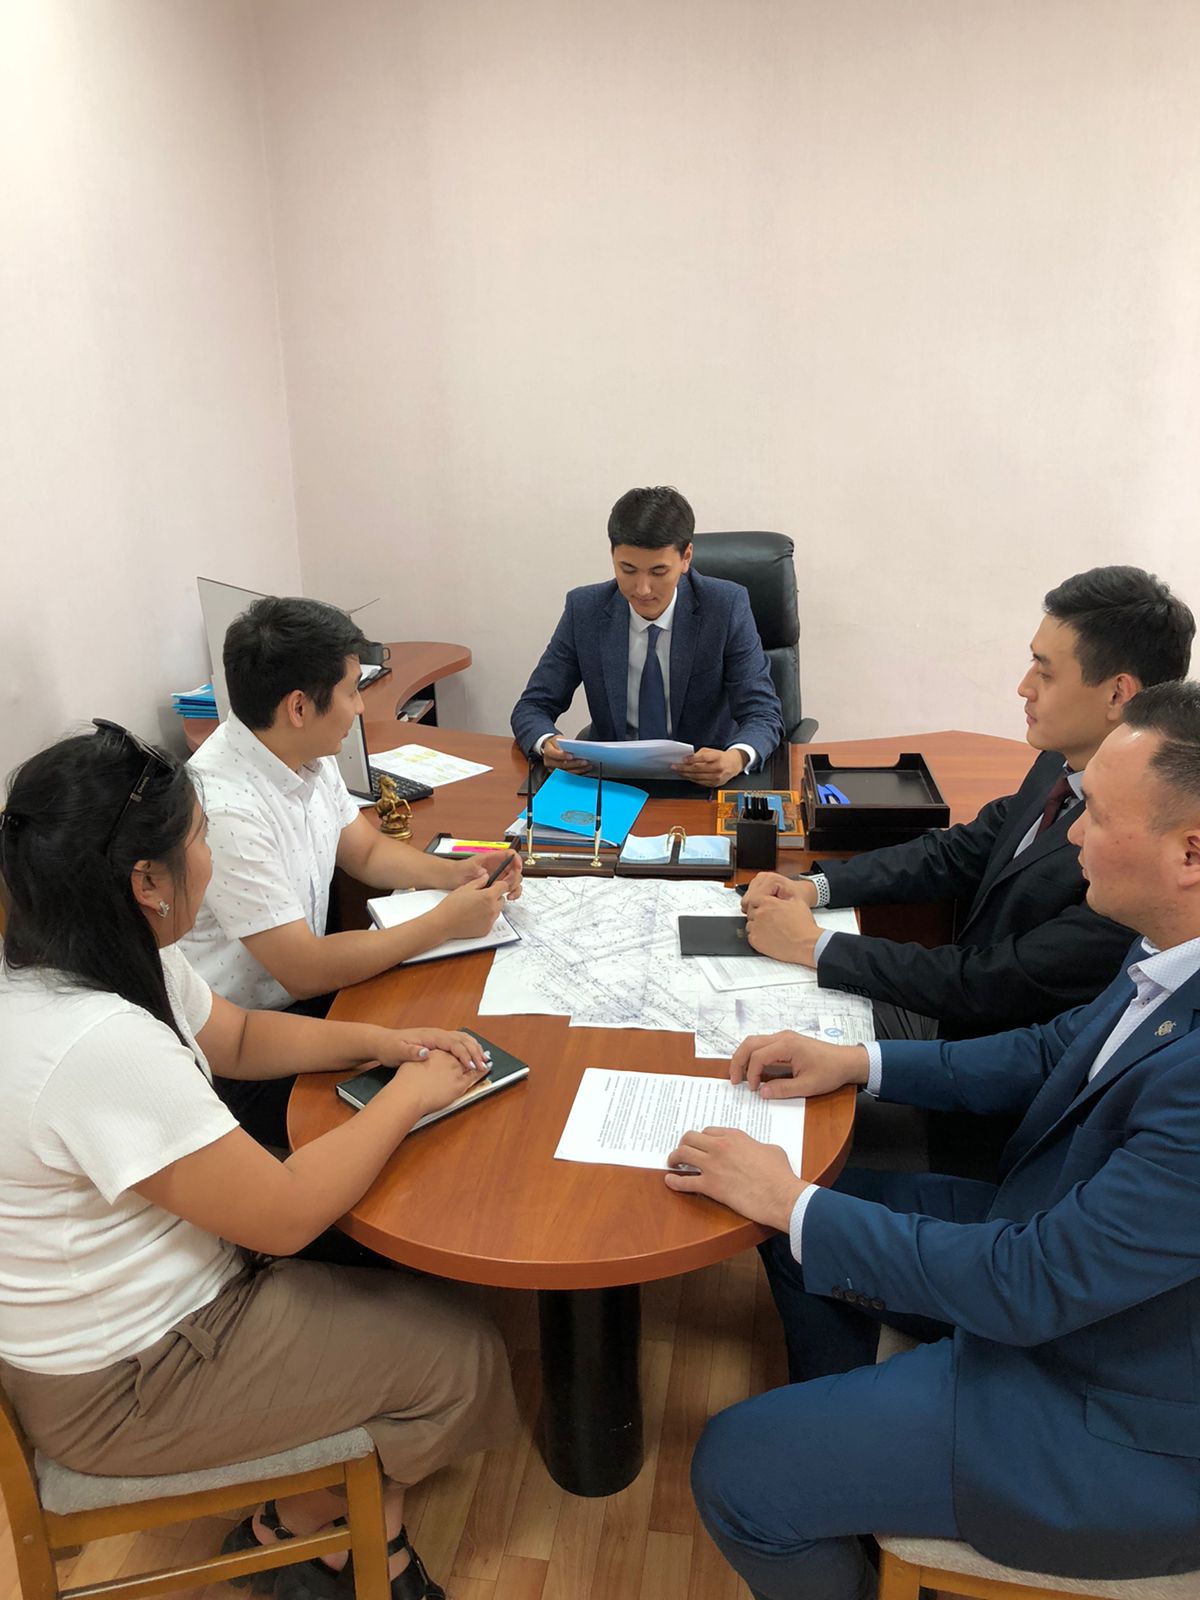 20 июня текущего года в Управлении строительства, архитектуры и градостроительства Восточно-Казахстанской области